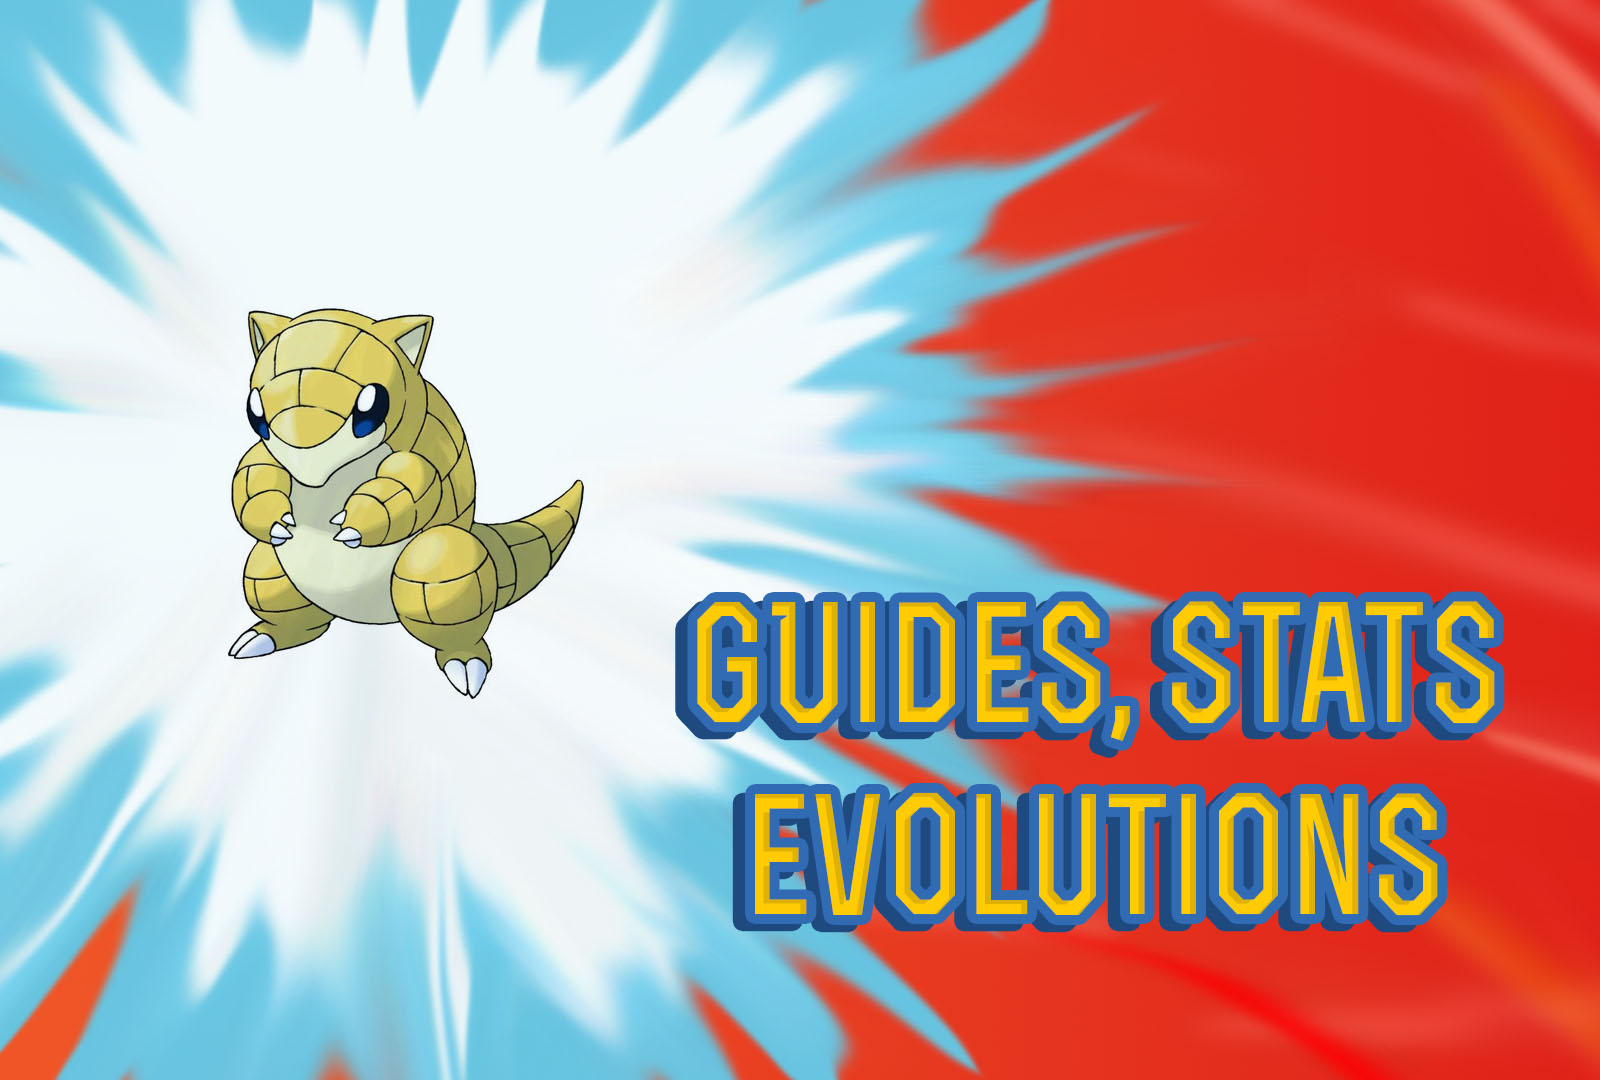 Pokemon Let's Go Sandshrew Guide, Stats & Evolutions